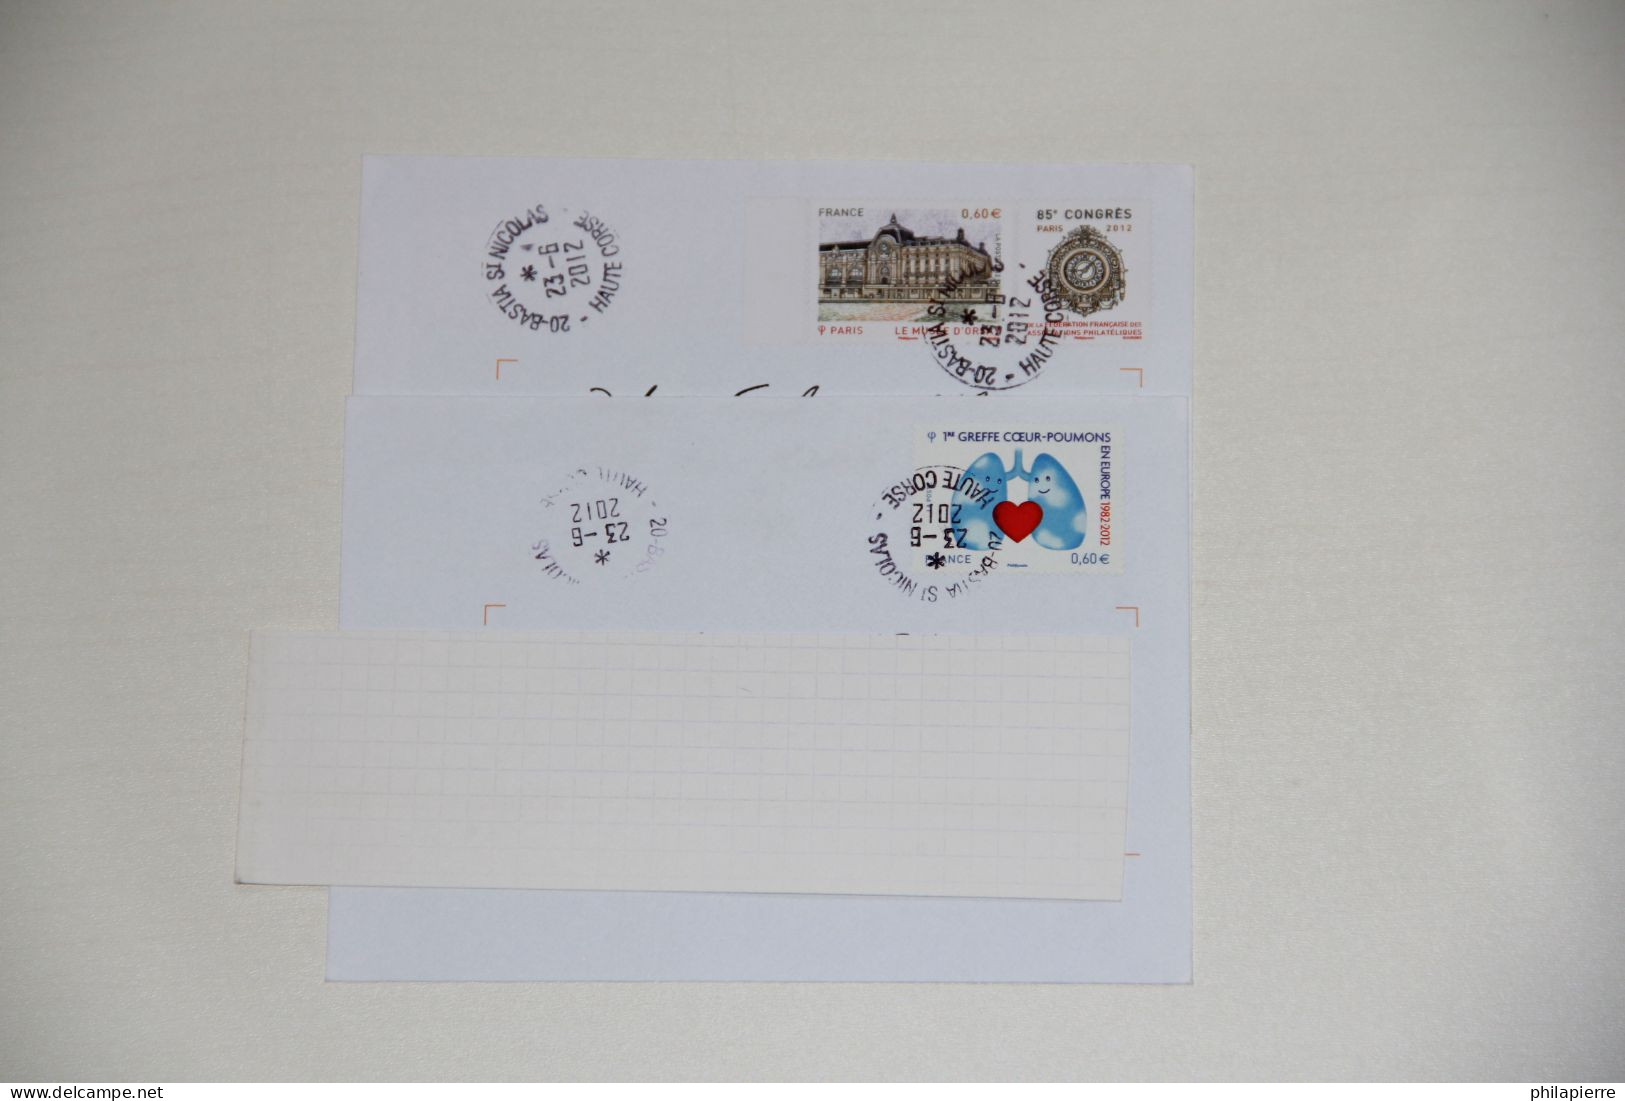 Lettres France, Timbres Oblitérés N°4674, N°4678, Greffe Coeur-poumons, Musée D'Orsay,  2012, TTBE - 1961-....